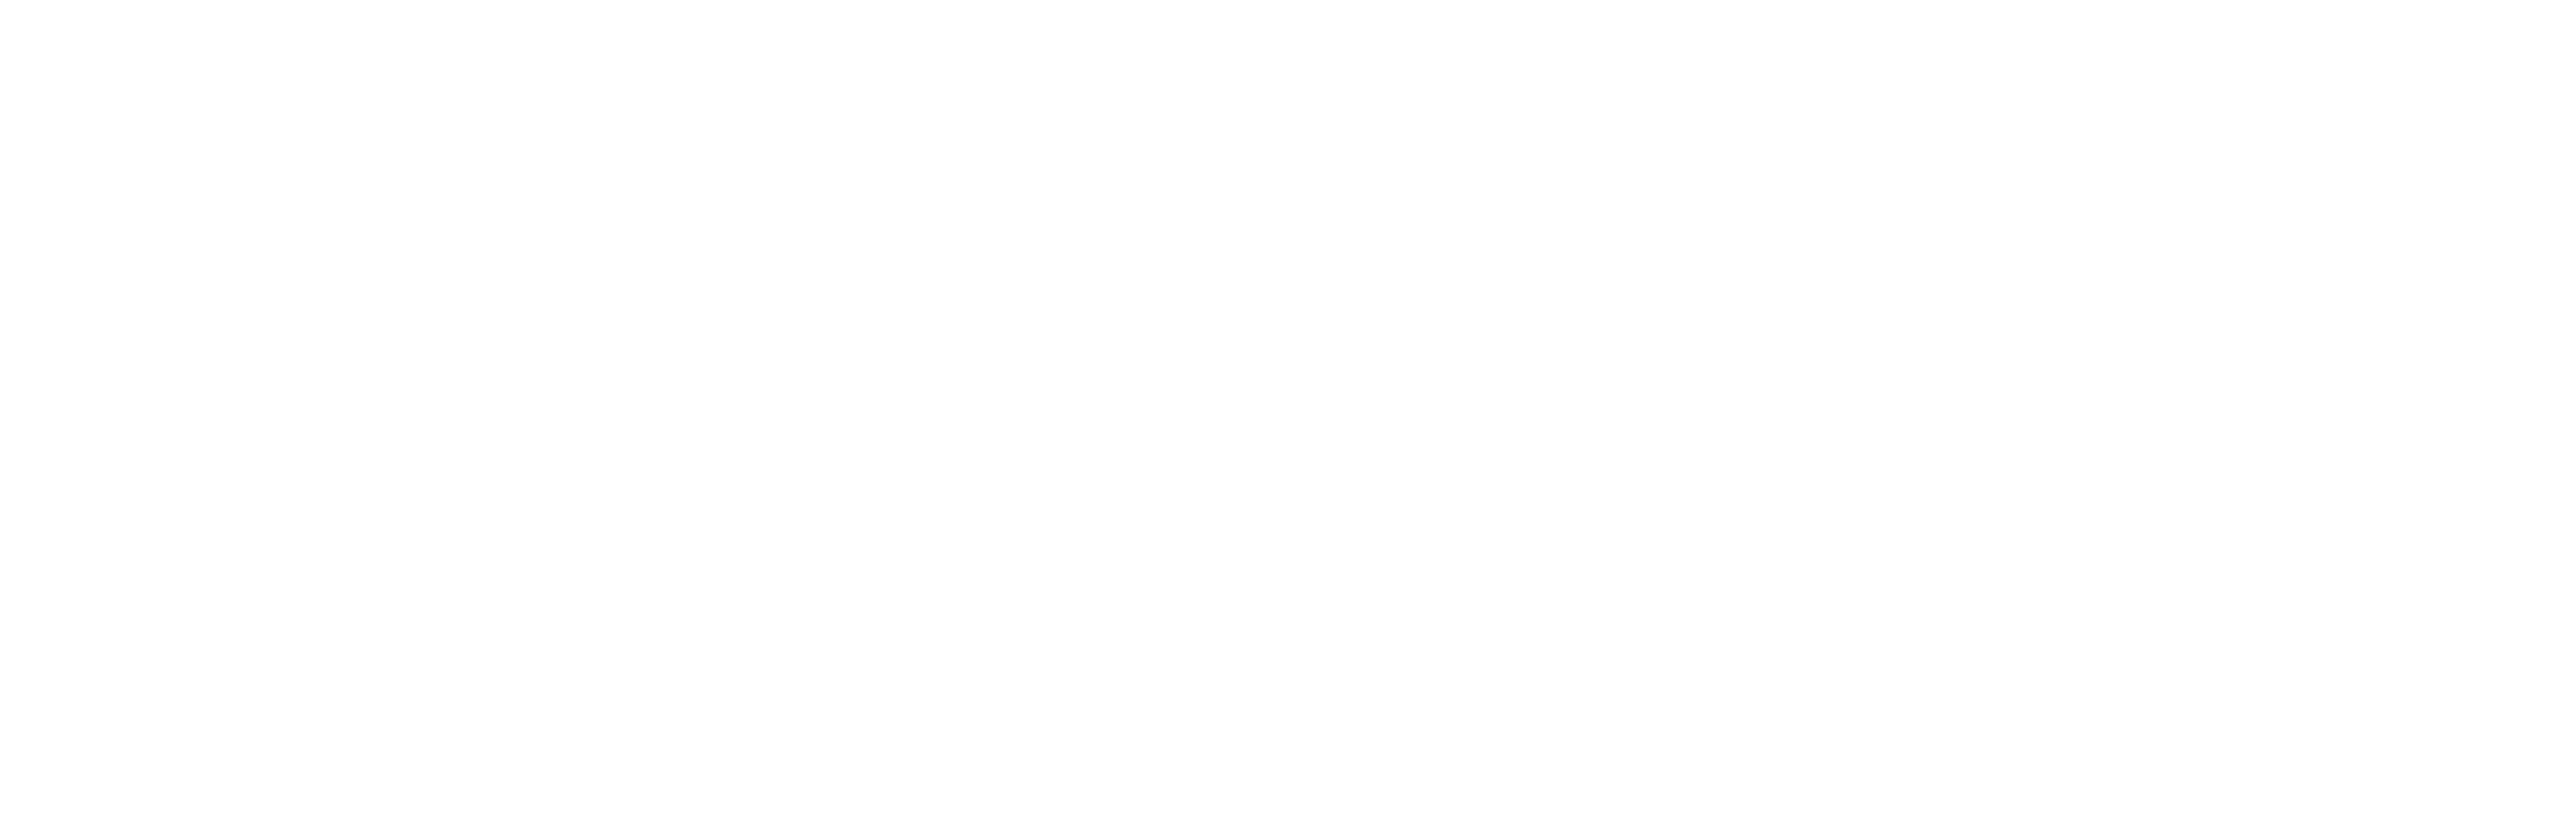 GS6110-One-Million-Black-Women-logo-WHITE-FIN-v2-02.png